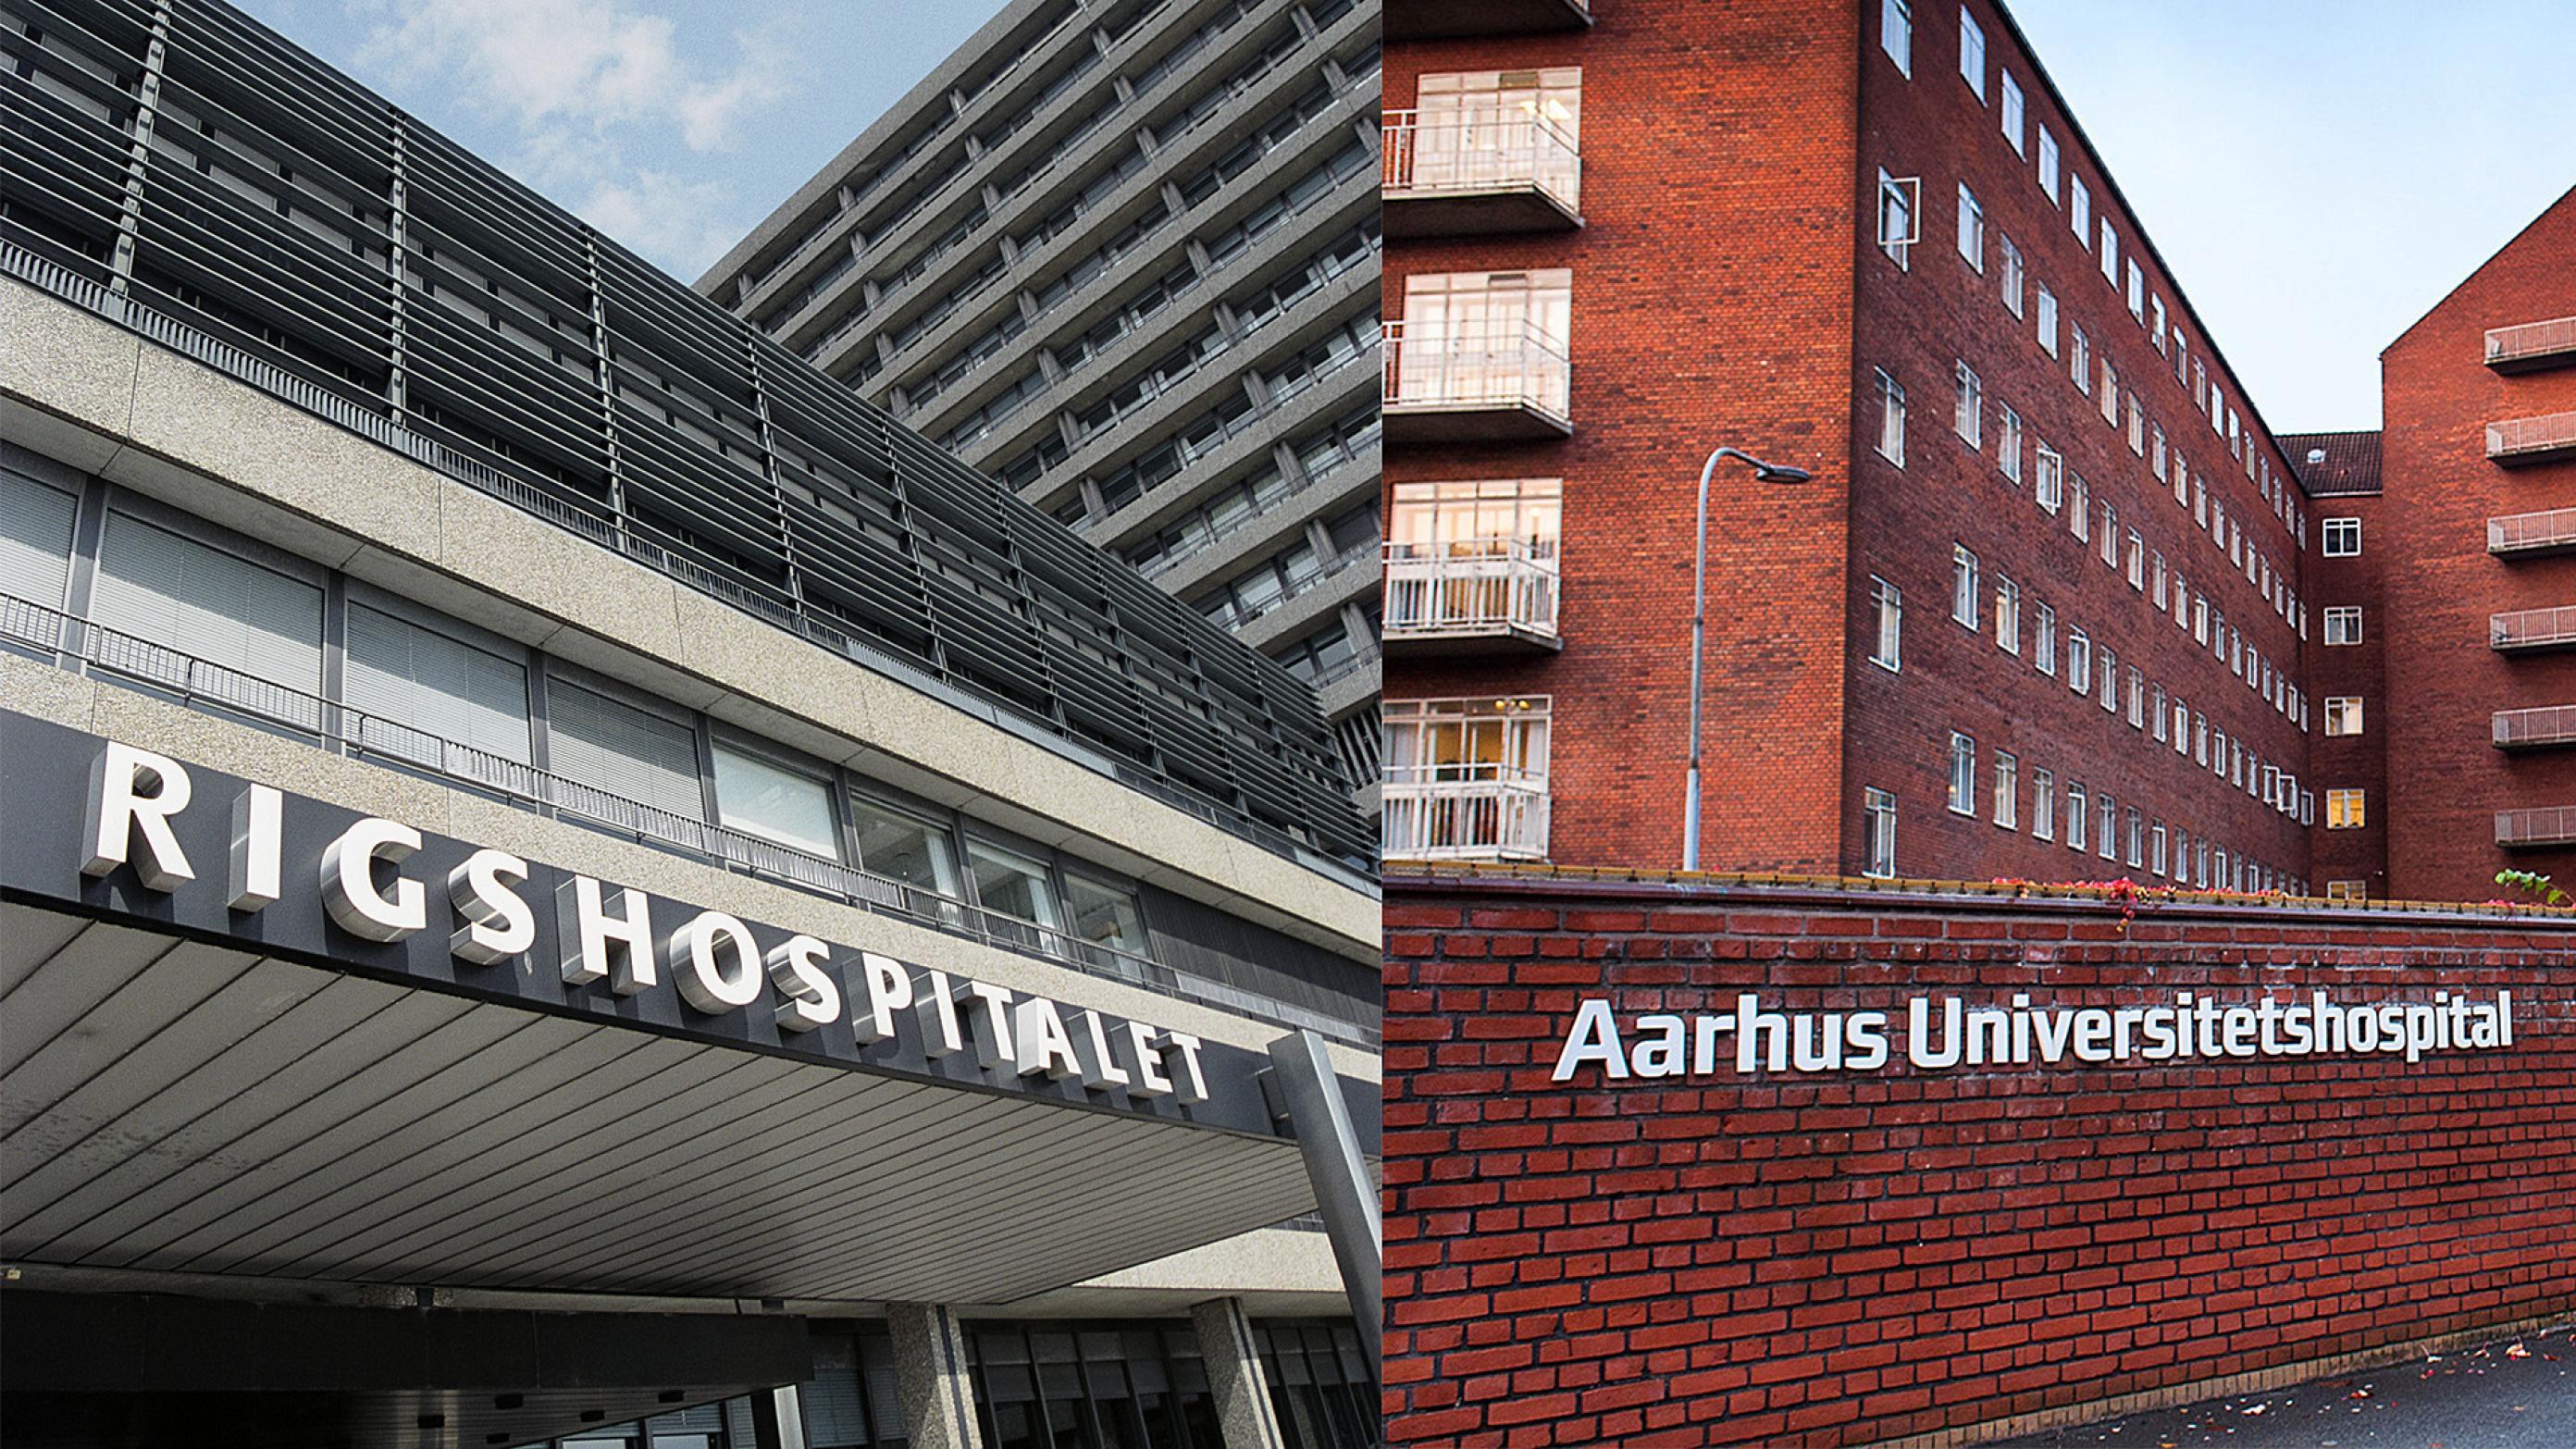 Foto: Rigshospitalet og Aarhus Universitets Hospital